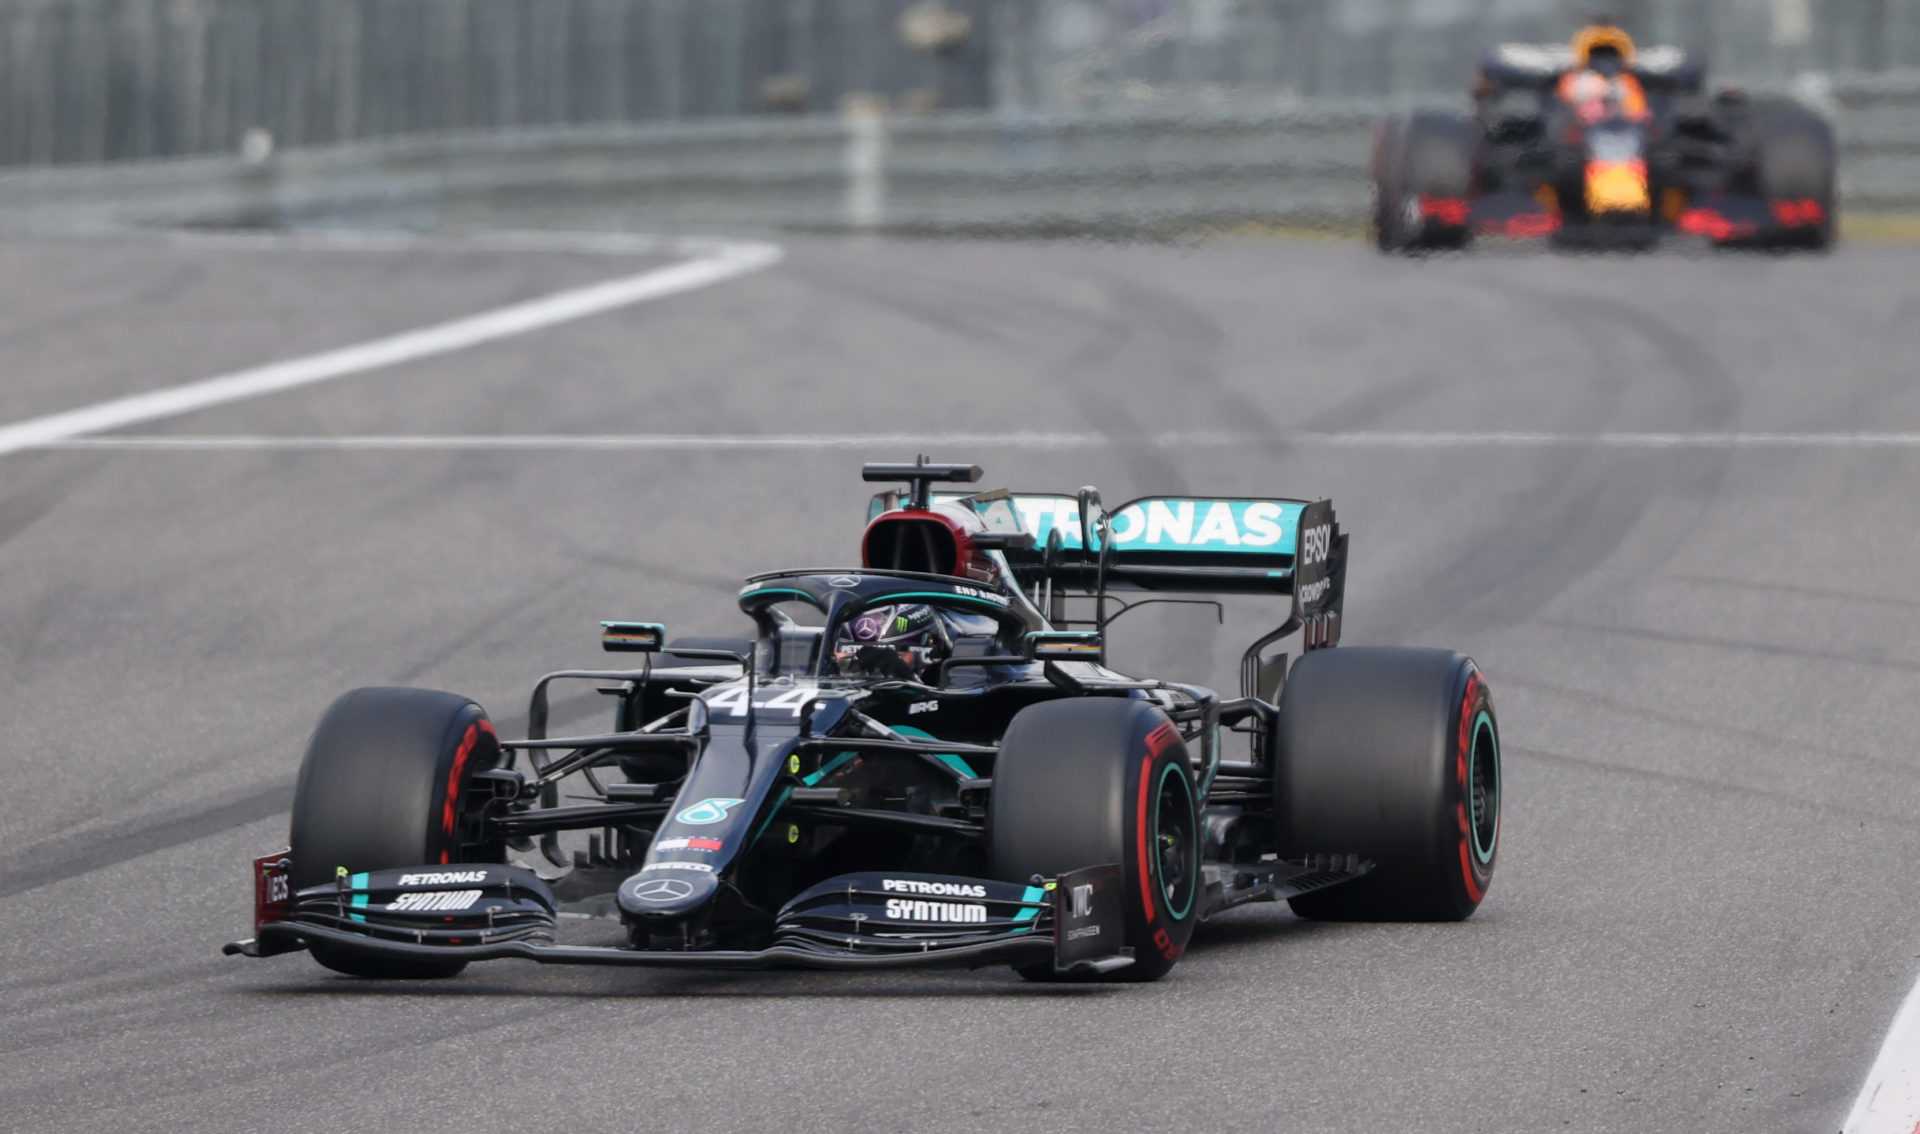 Pilote Mercedes Lewis Hamilton avec Max Verstappen de Red Bull en arrière-plan lors de l'Eifel GP